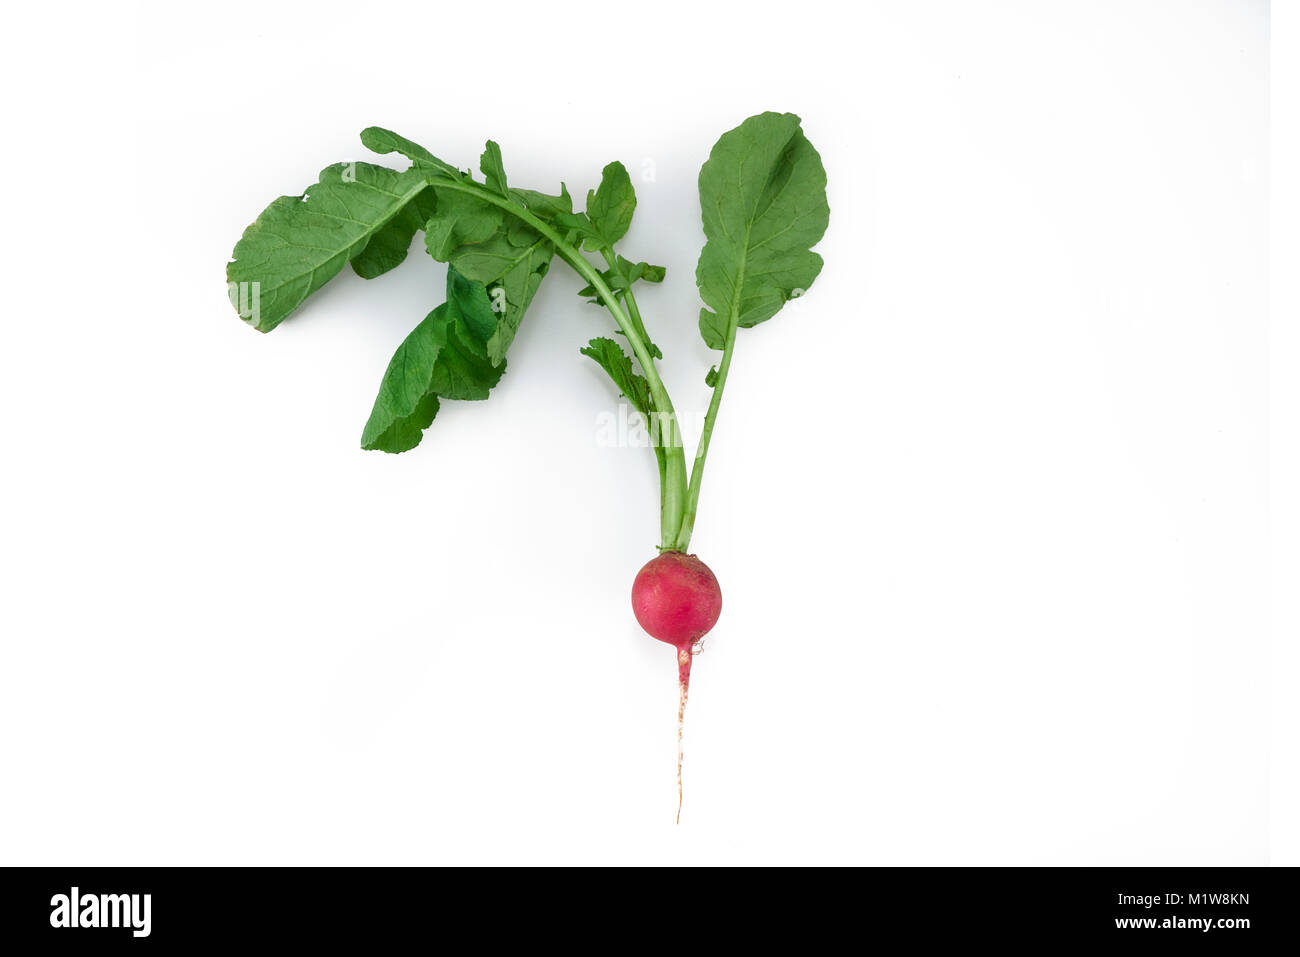 Un organico fresco ripe rosso vegetale di rafano isolato in uno sfondo bianco Foto Stock